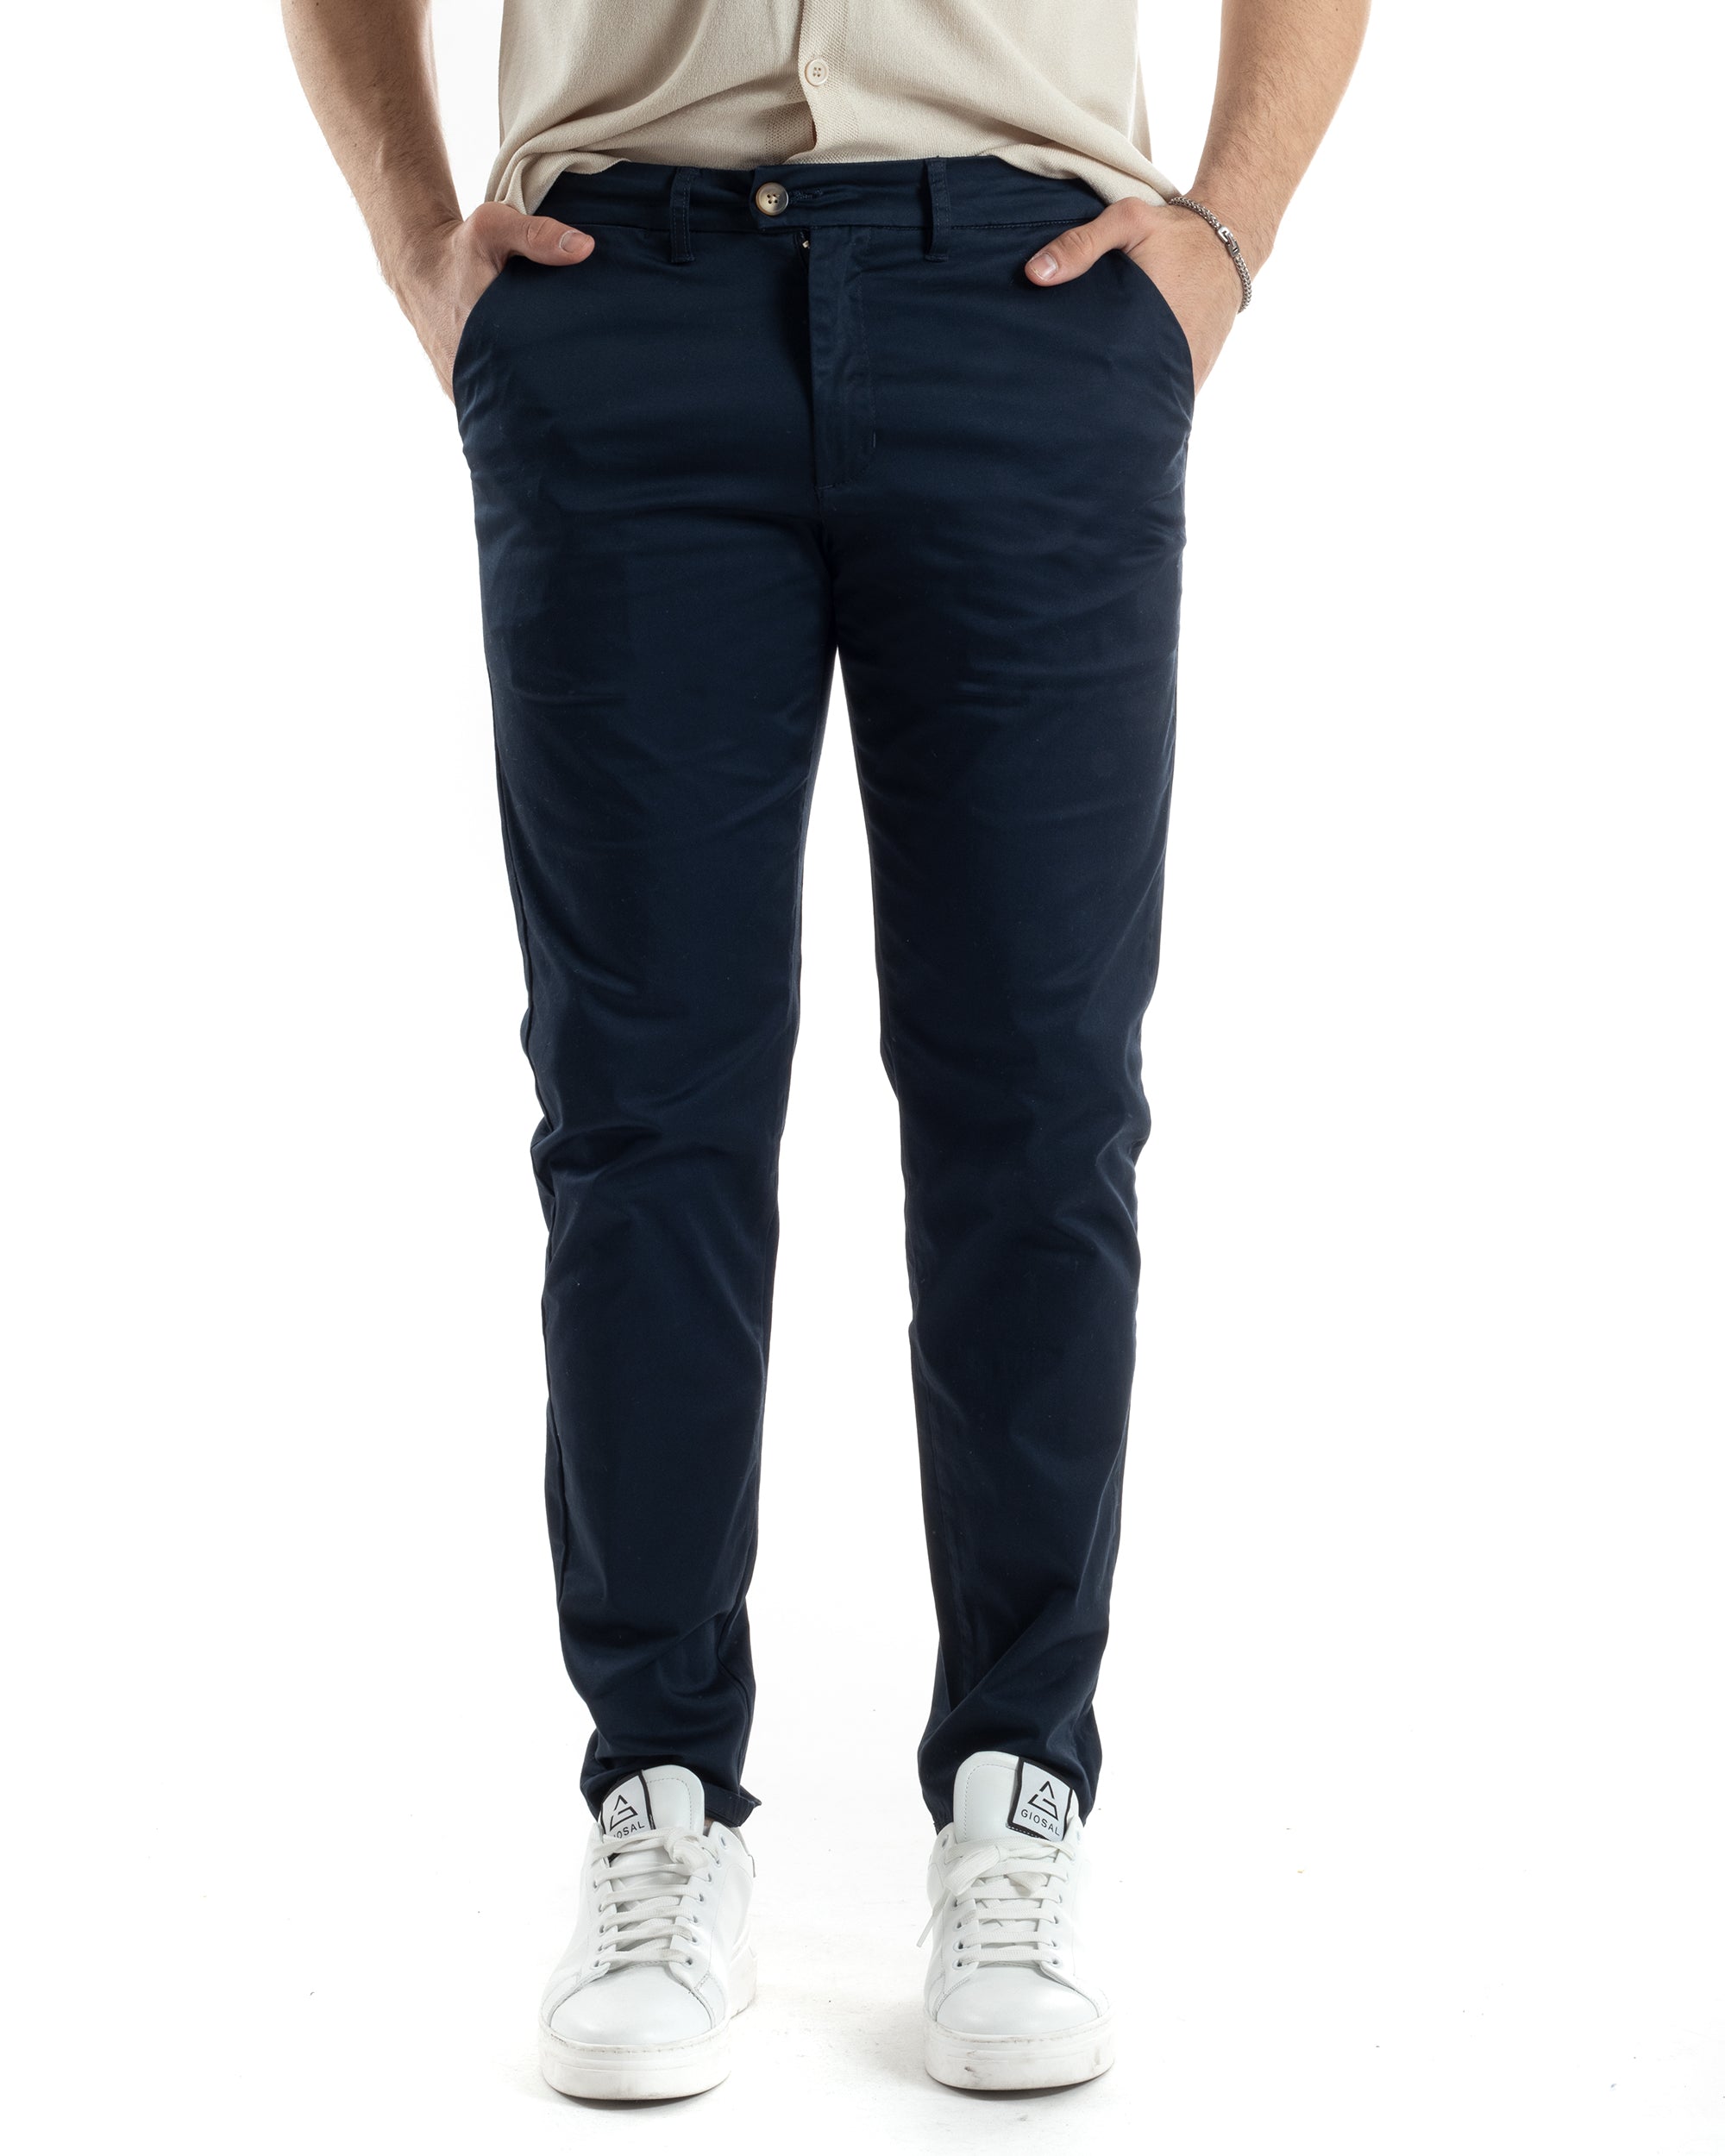 Pantaloni Uomo Cotone Raso Tasca America Slim Fit Abbottonatura Allungata Tinta Unita Blu GIOSAL-P6063A